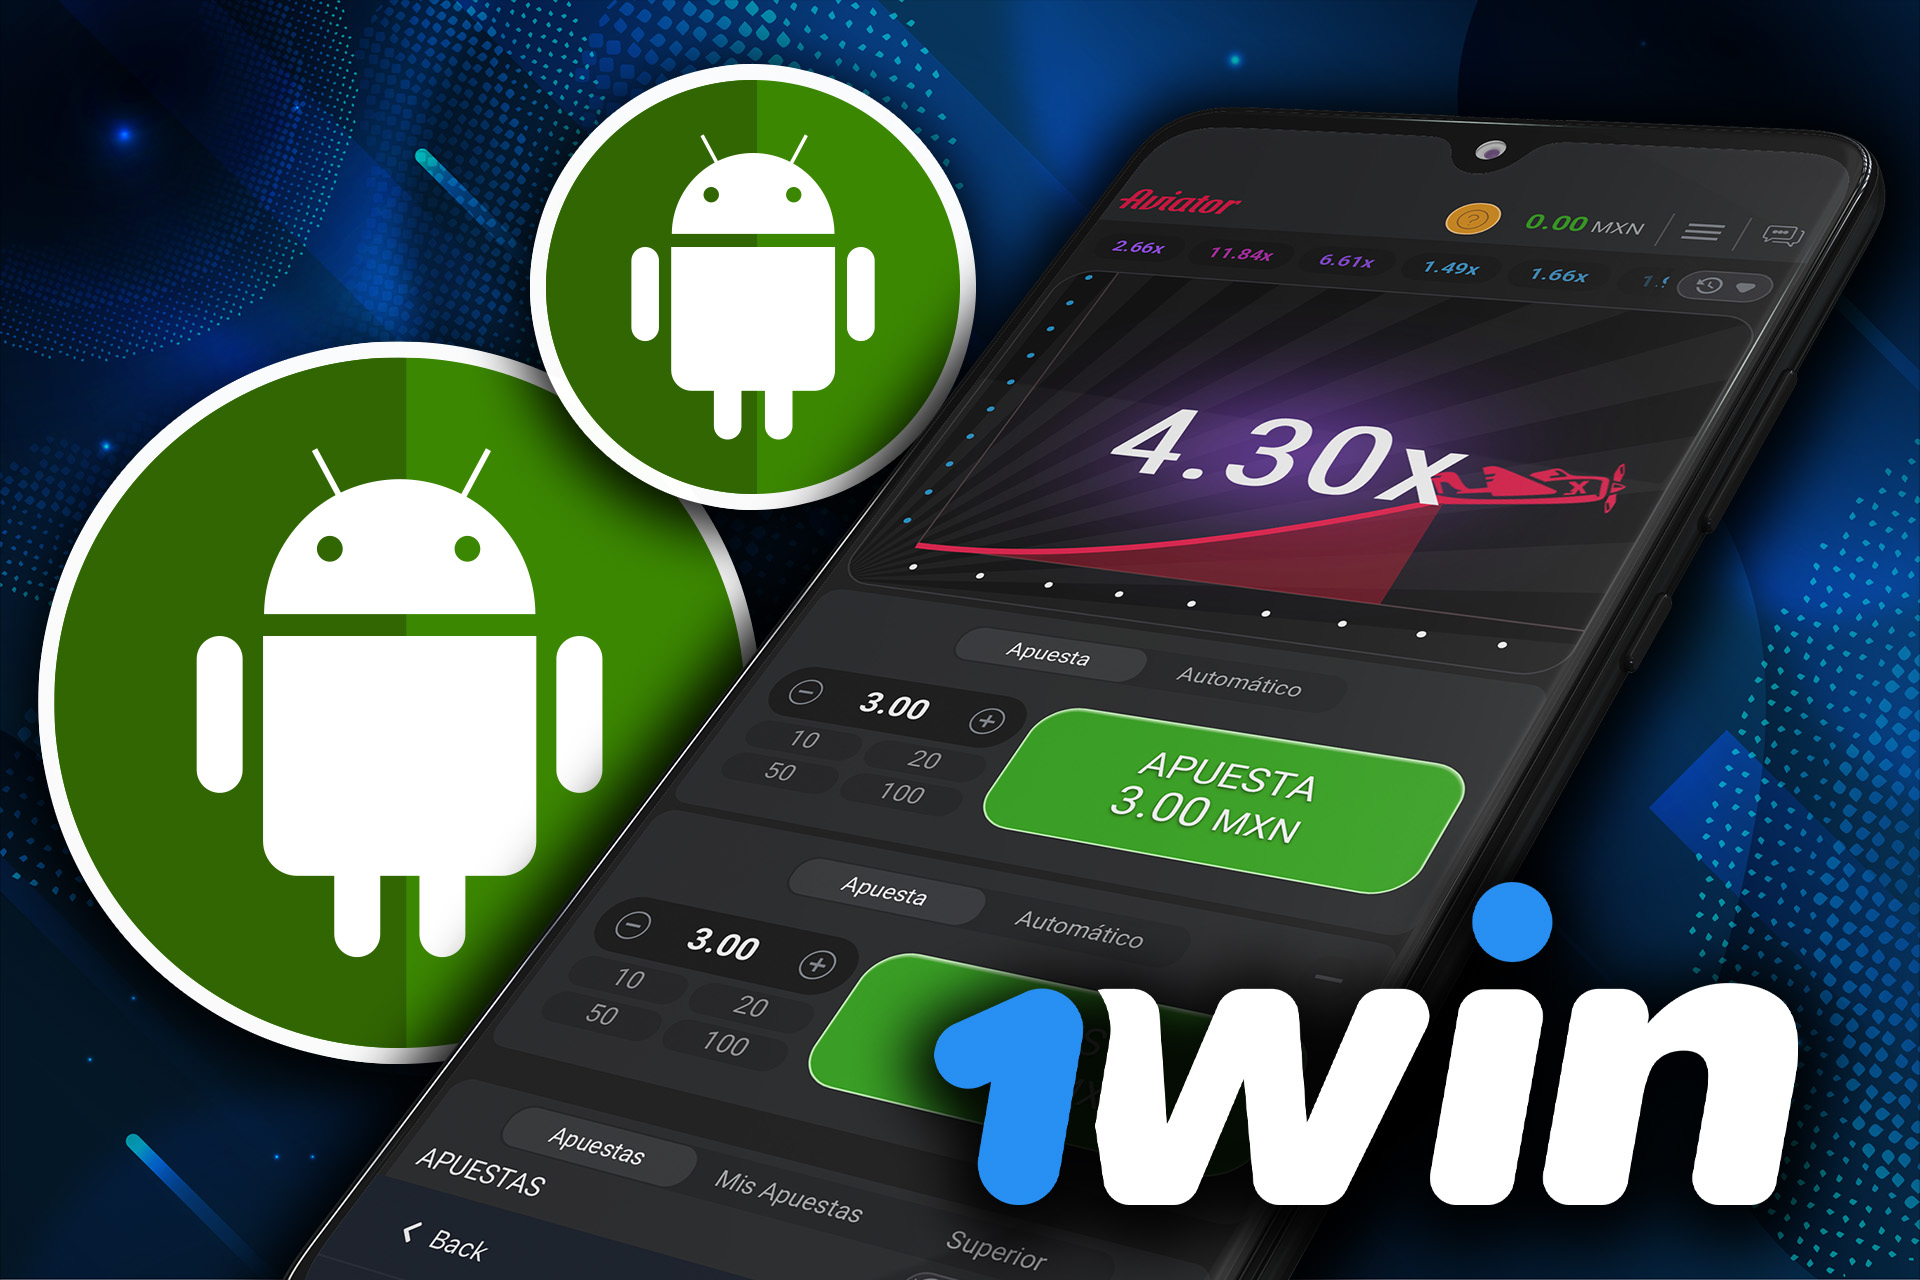 Descarga la aplicación 1win en tu teléfono para jugar a Aviator desde tu dispositivo Android.